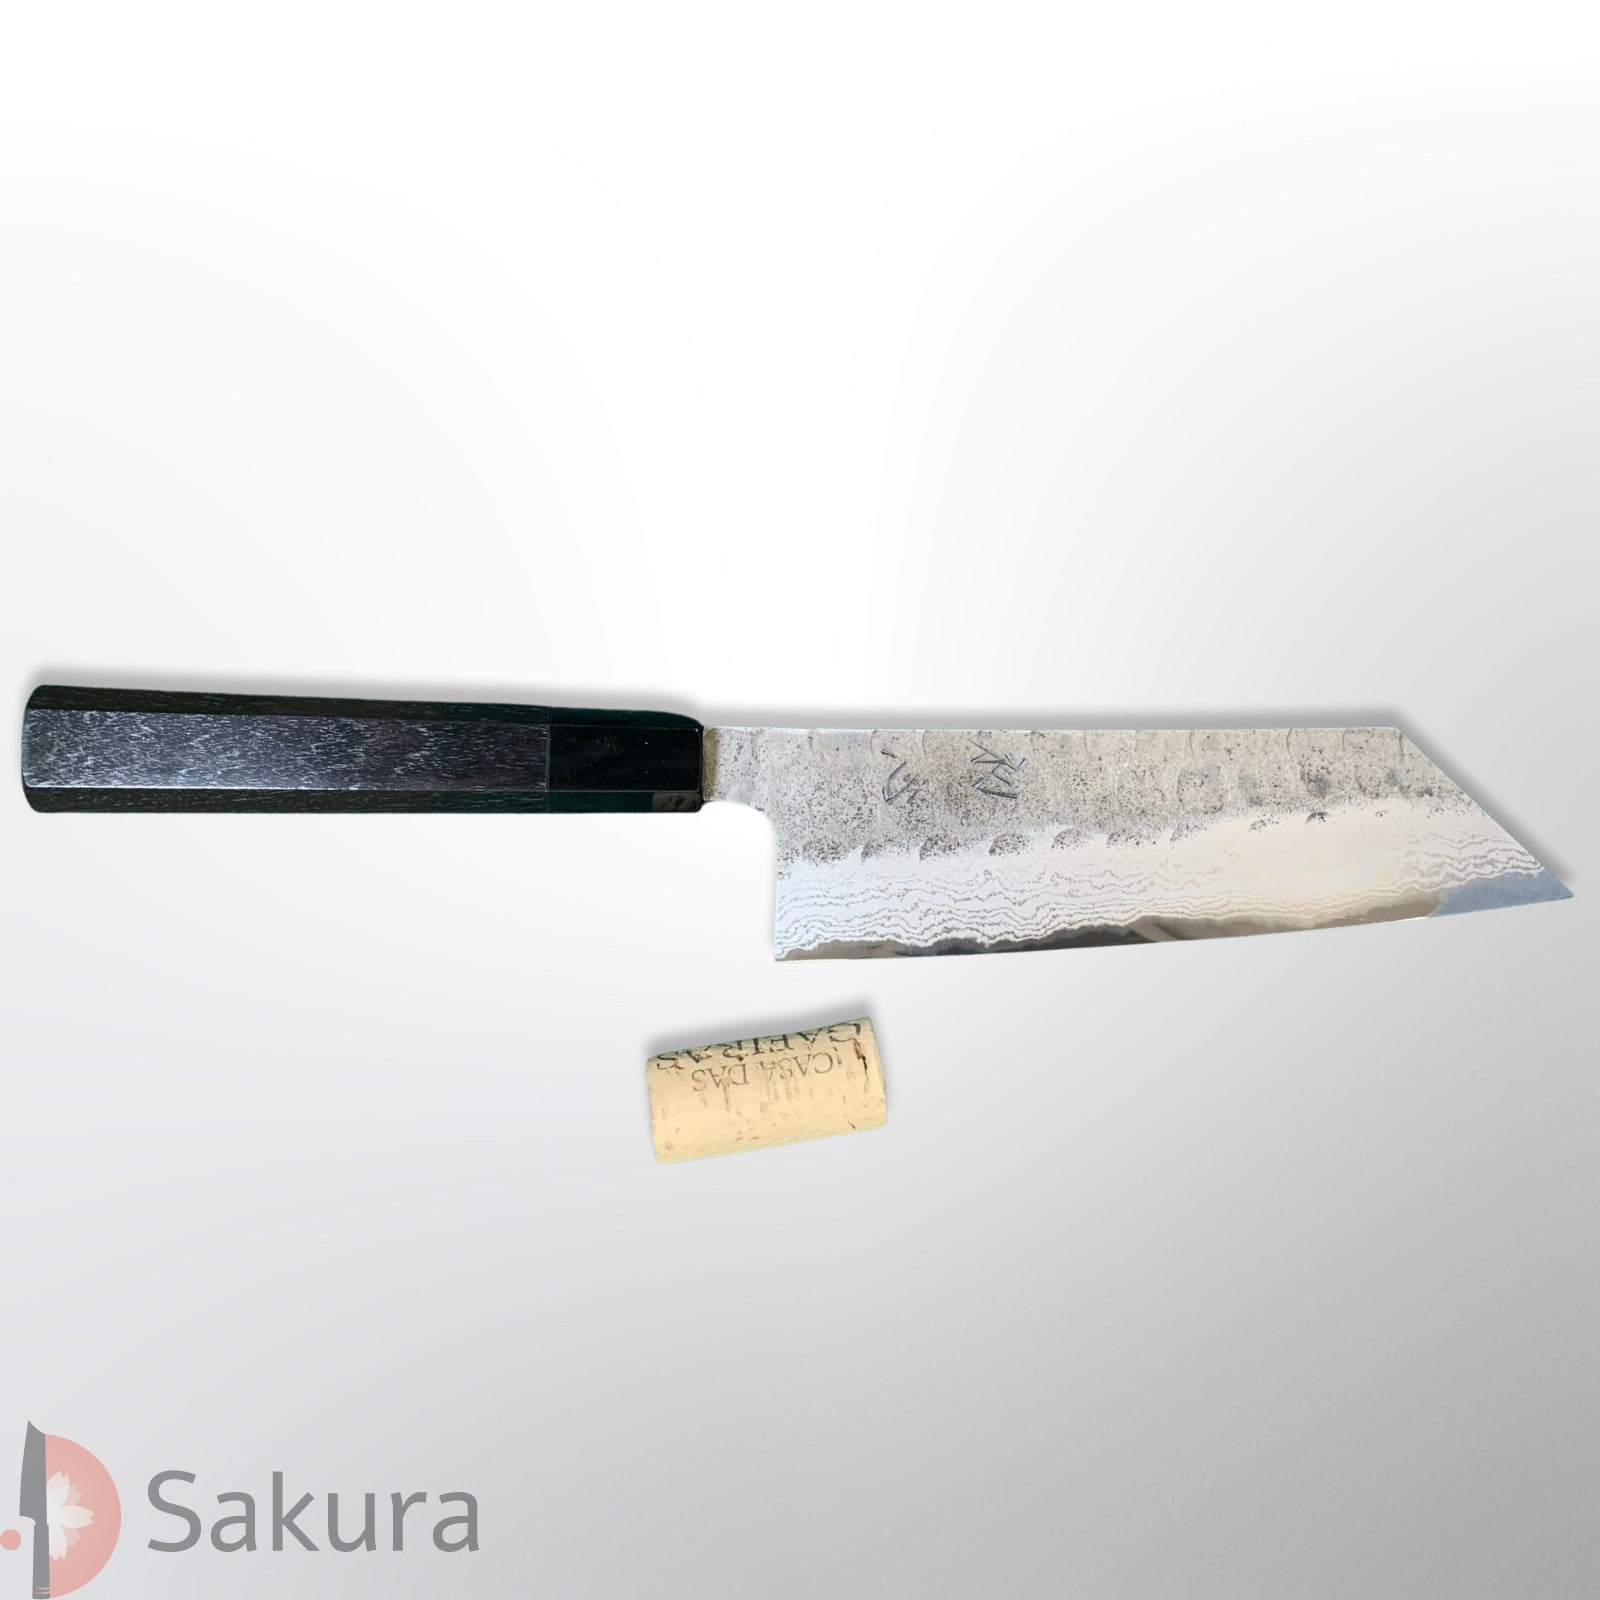 סכין רב-תכליתית בּוּנְקָה 175מ״מ מחושלת בעבודת יד 3 שכבות: פלדת פחמן יפנית מתקדמת מסוג Aogami Super גימור קורואוצ׳י ריקוע פטיש האטסו קוקורו יפן – SKAHATSINABUNKA16517